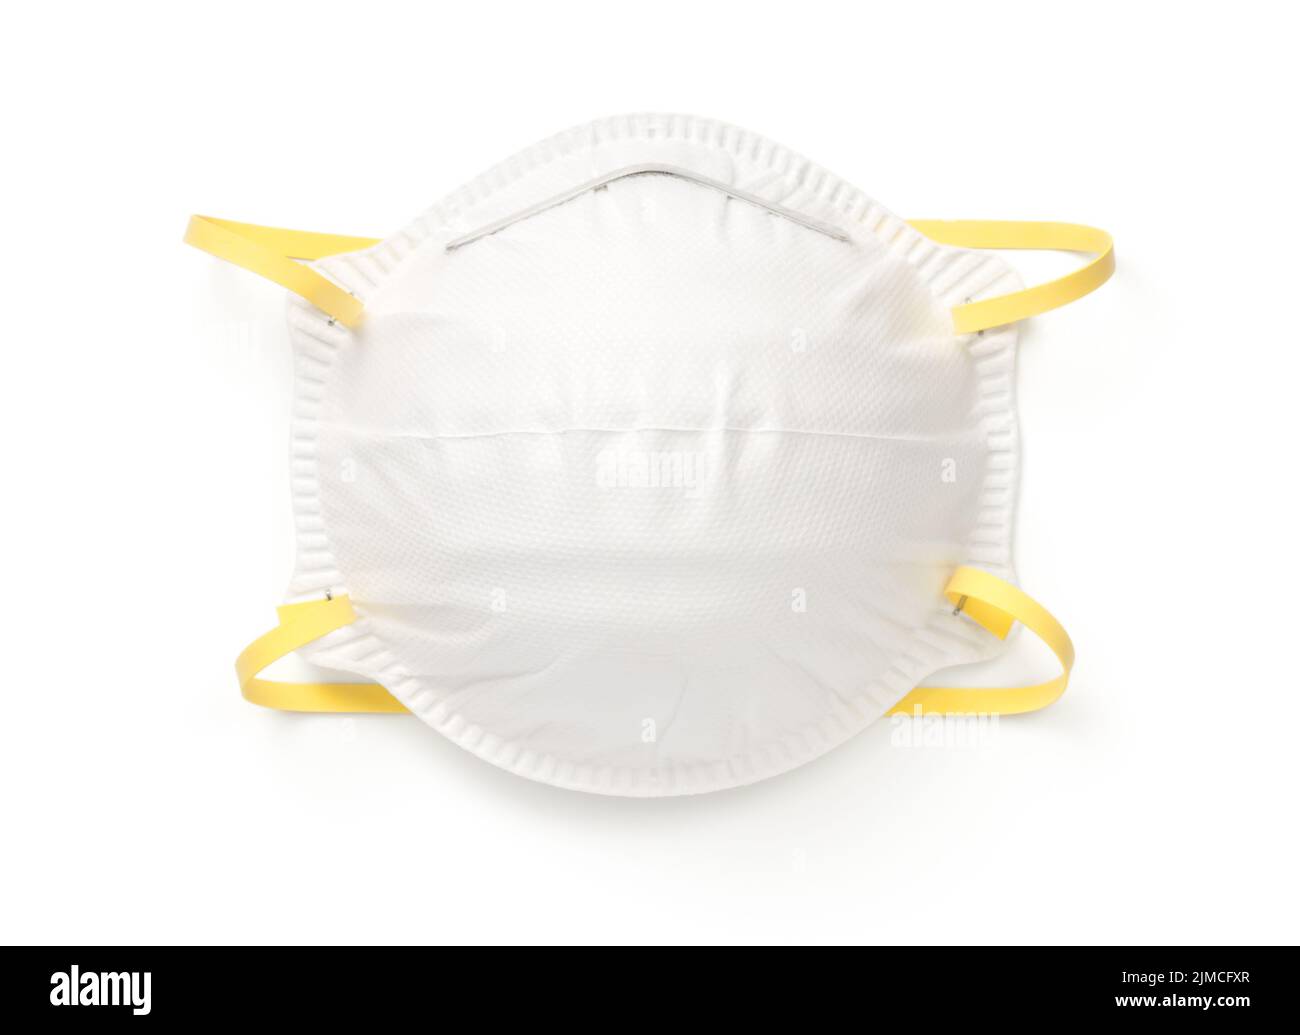 Masque de protection respiratoire isolé sur fond blanc Banque D'Images